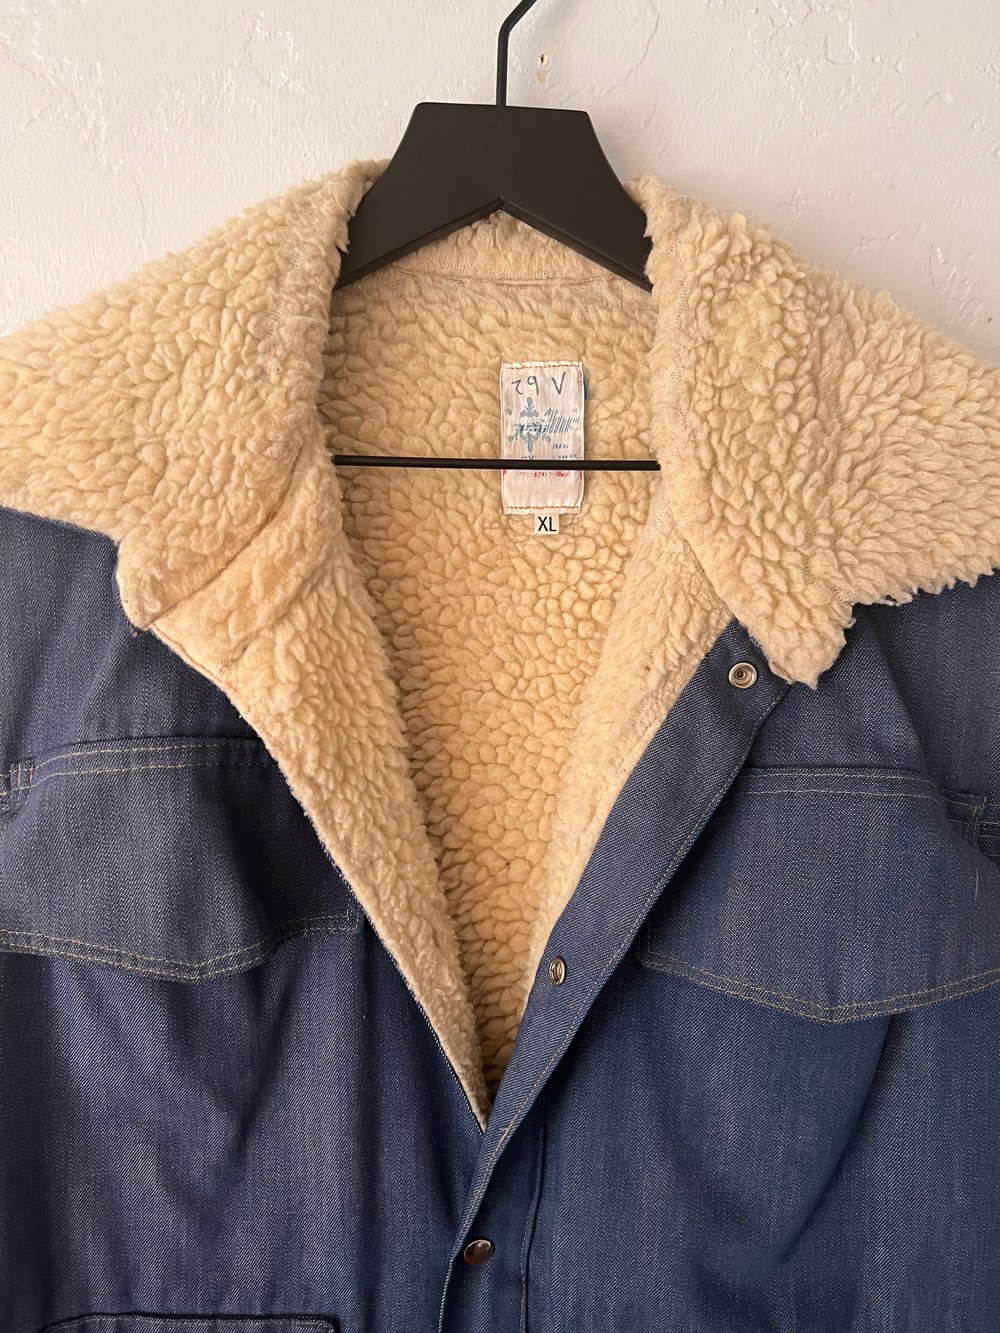 Vintage Sherpa Lined Denim Vest (XL)